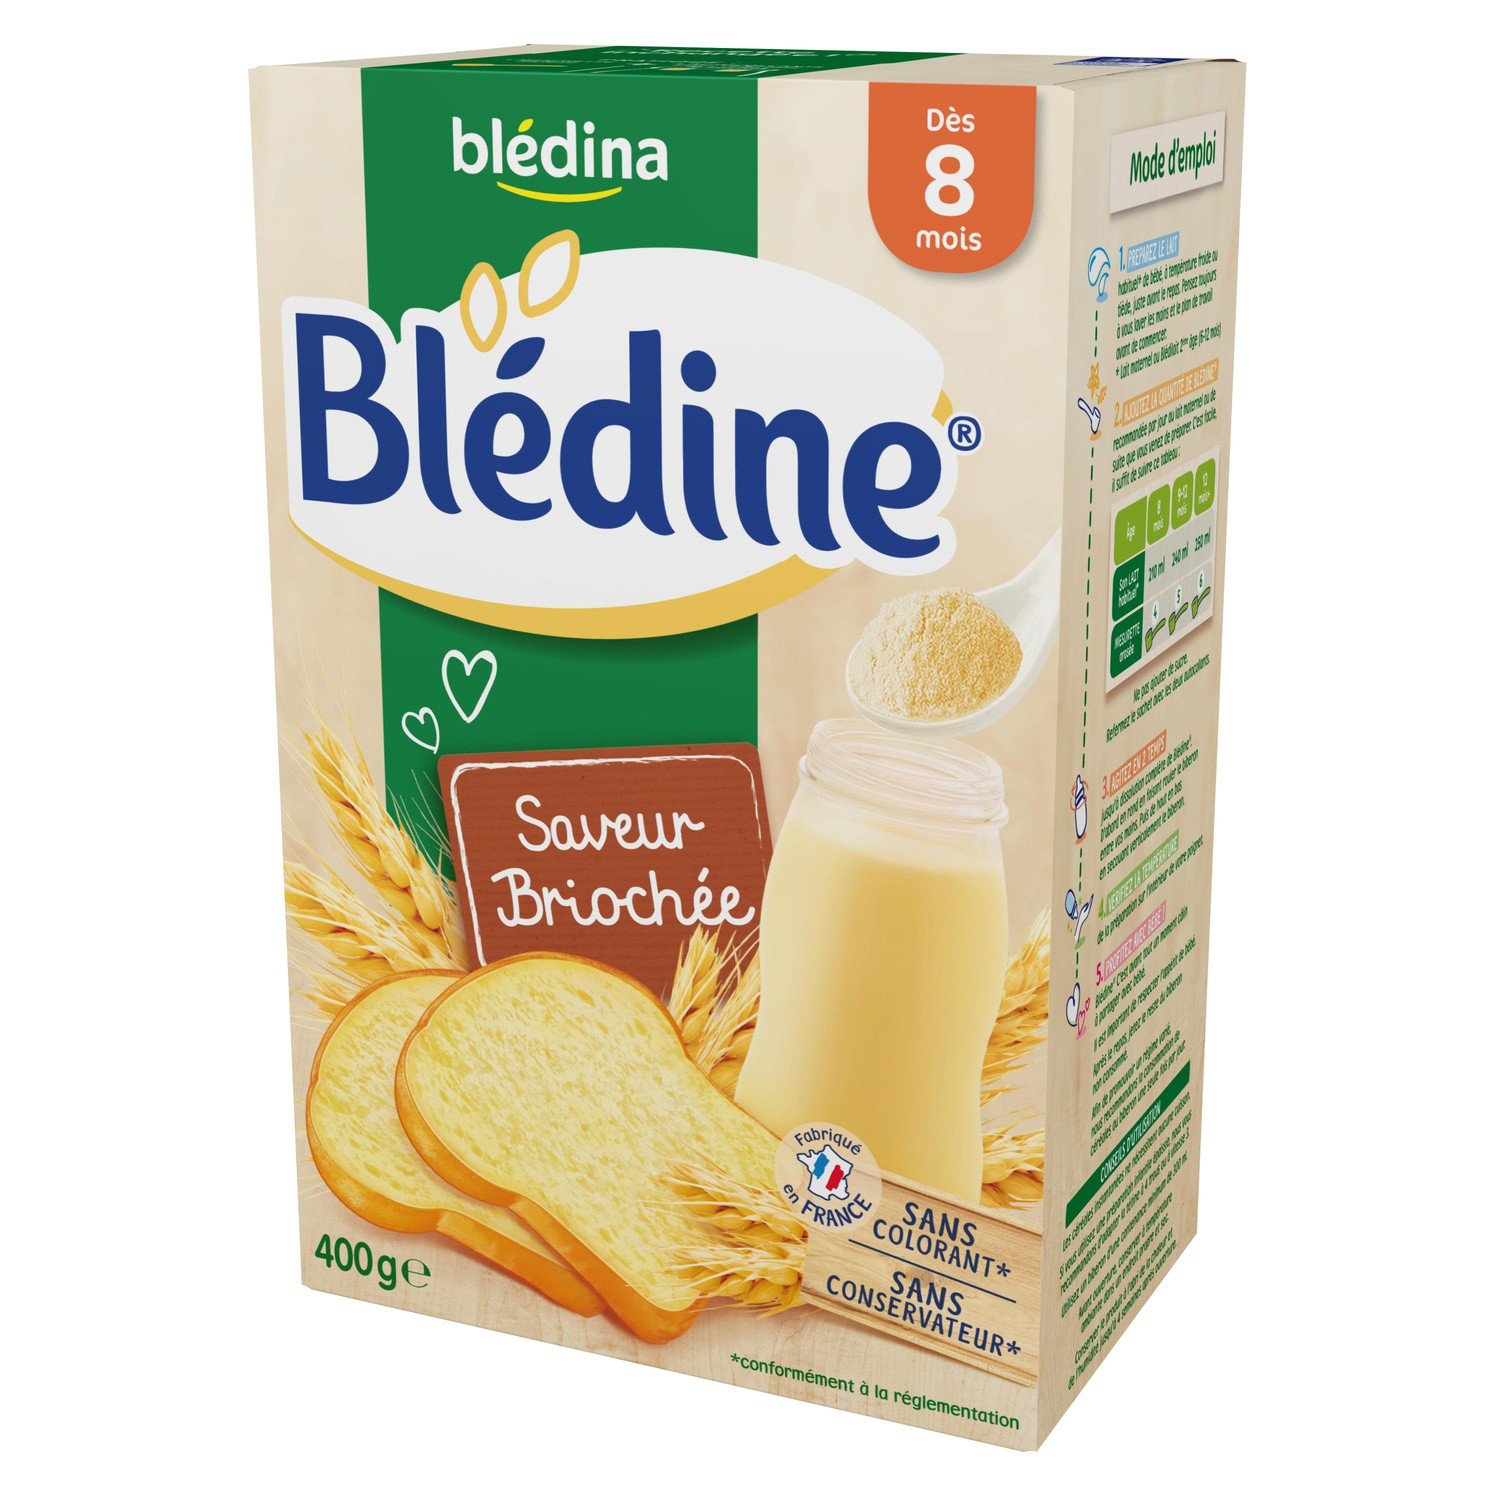 BLEDINE - Céréales Saveur Briochée - Dès 8 mois, 400g